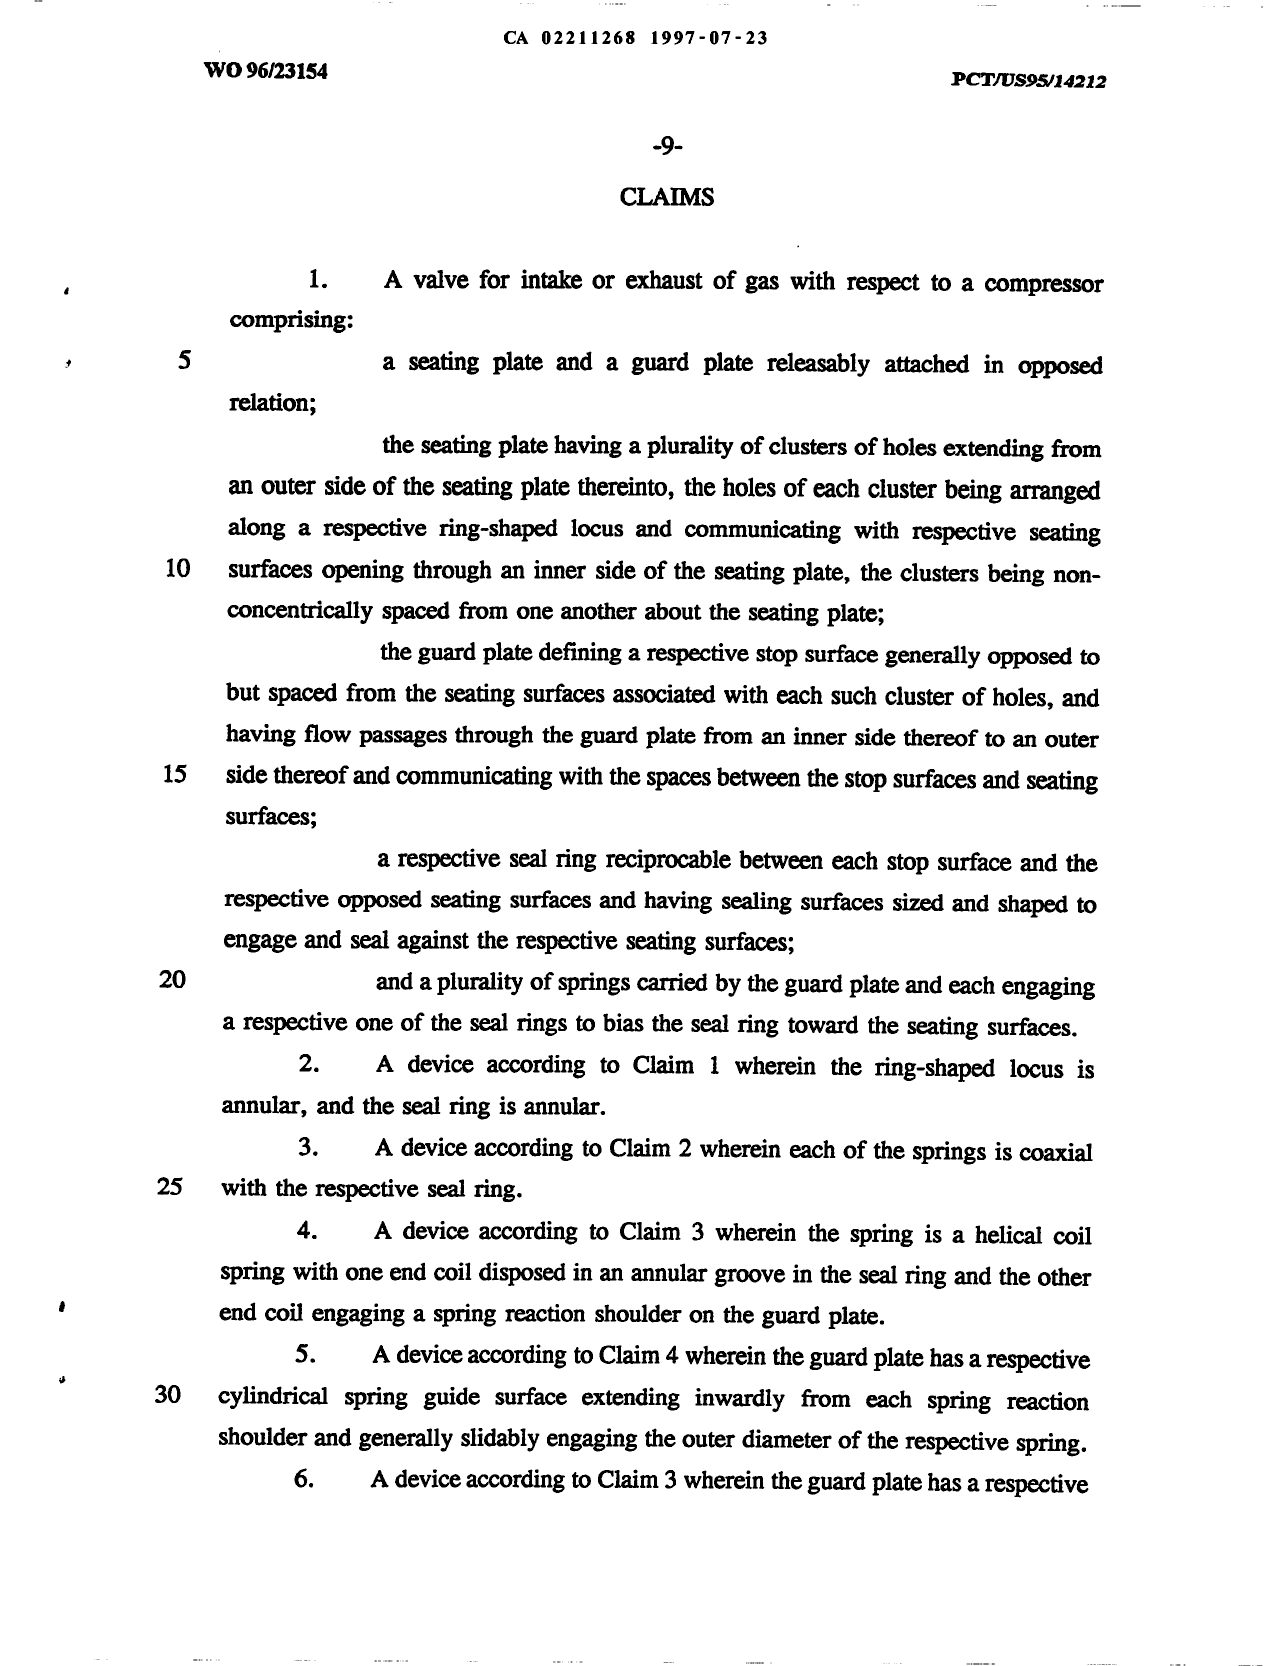 Document de brevet canadien 2211268. Revendications 19970723. Image 1 de 3